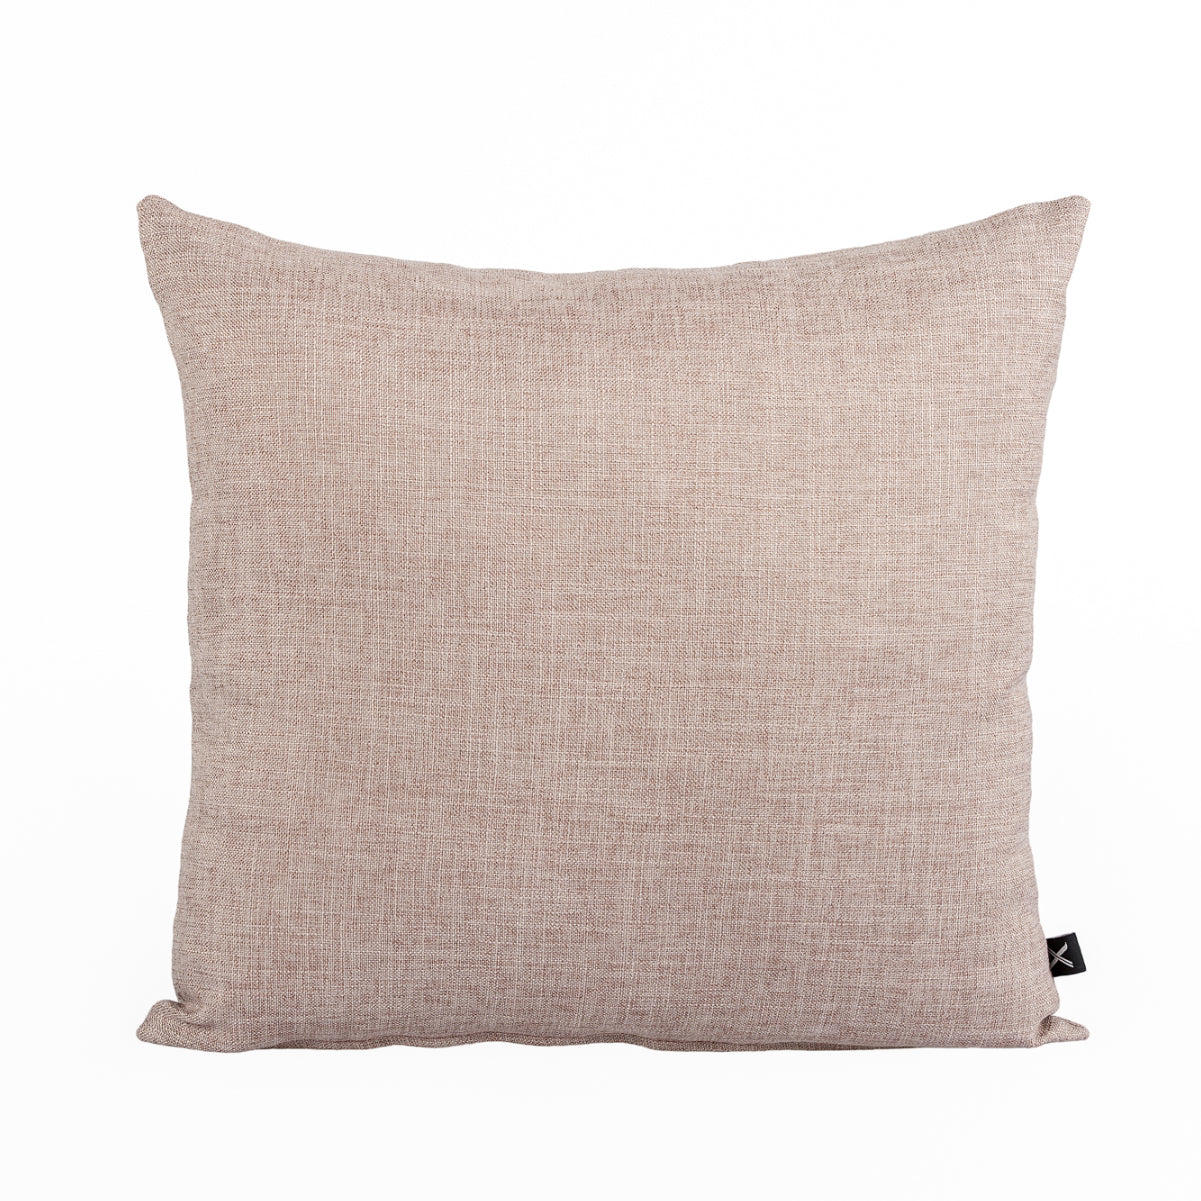 Cushion DINJA 45x45 Red sort of Linen | ❤️ @martacyrnecarvalho